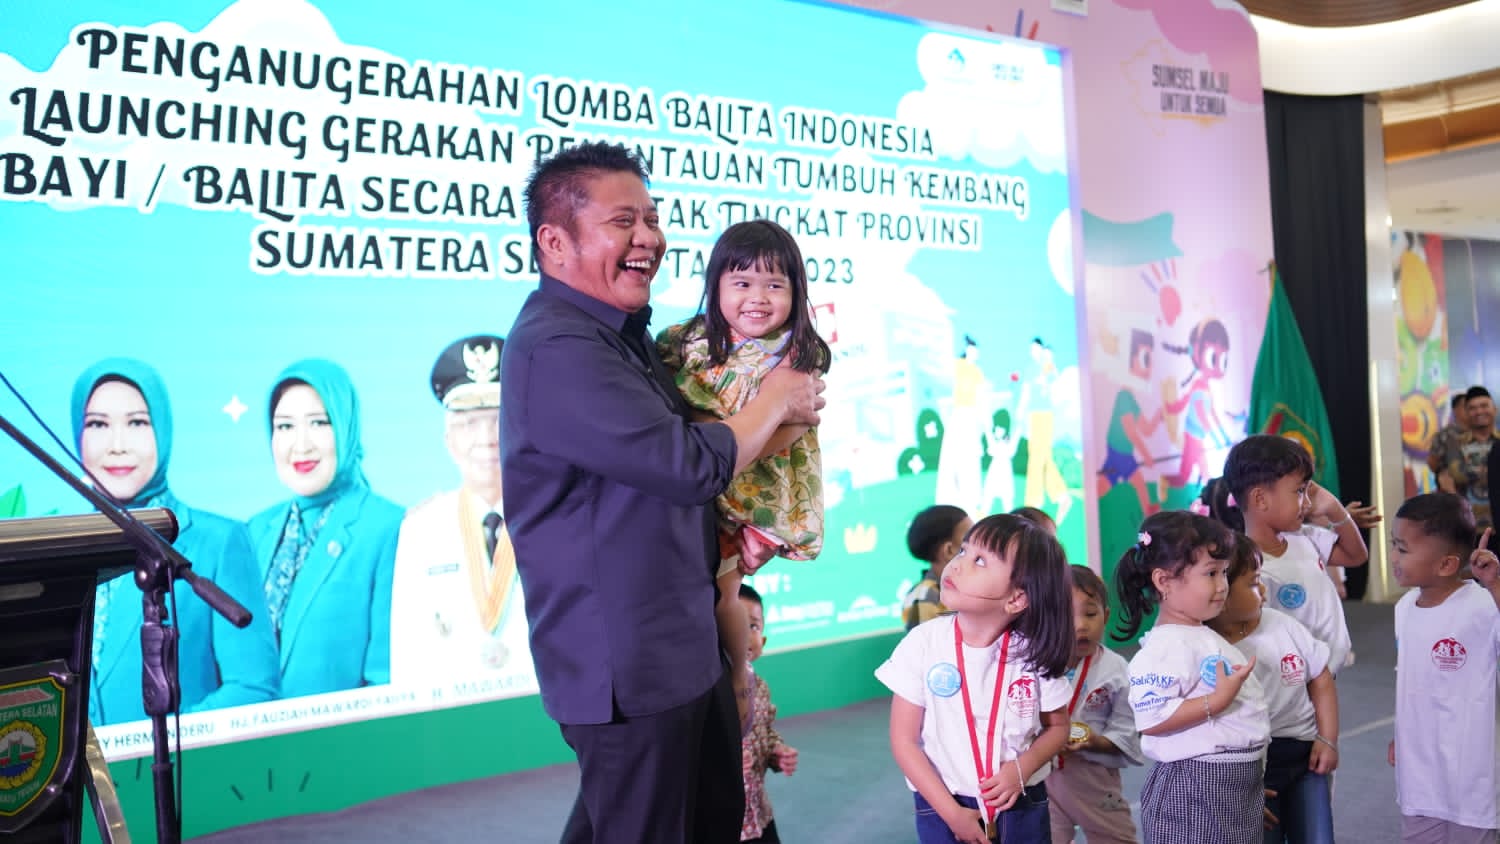  Cegah Anak Stunting, Pemprov Sumsel Launching Gerakan Pamantauan Tumbuh Kembang Balita Se-Sumsel